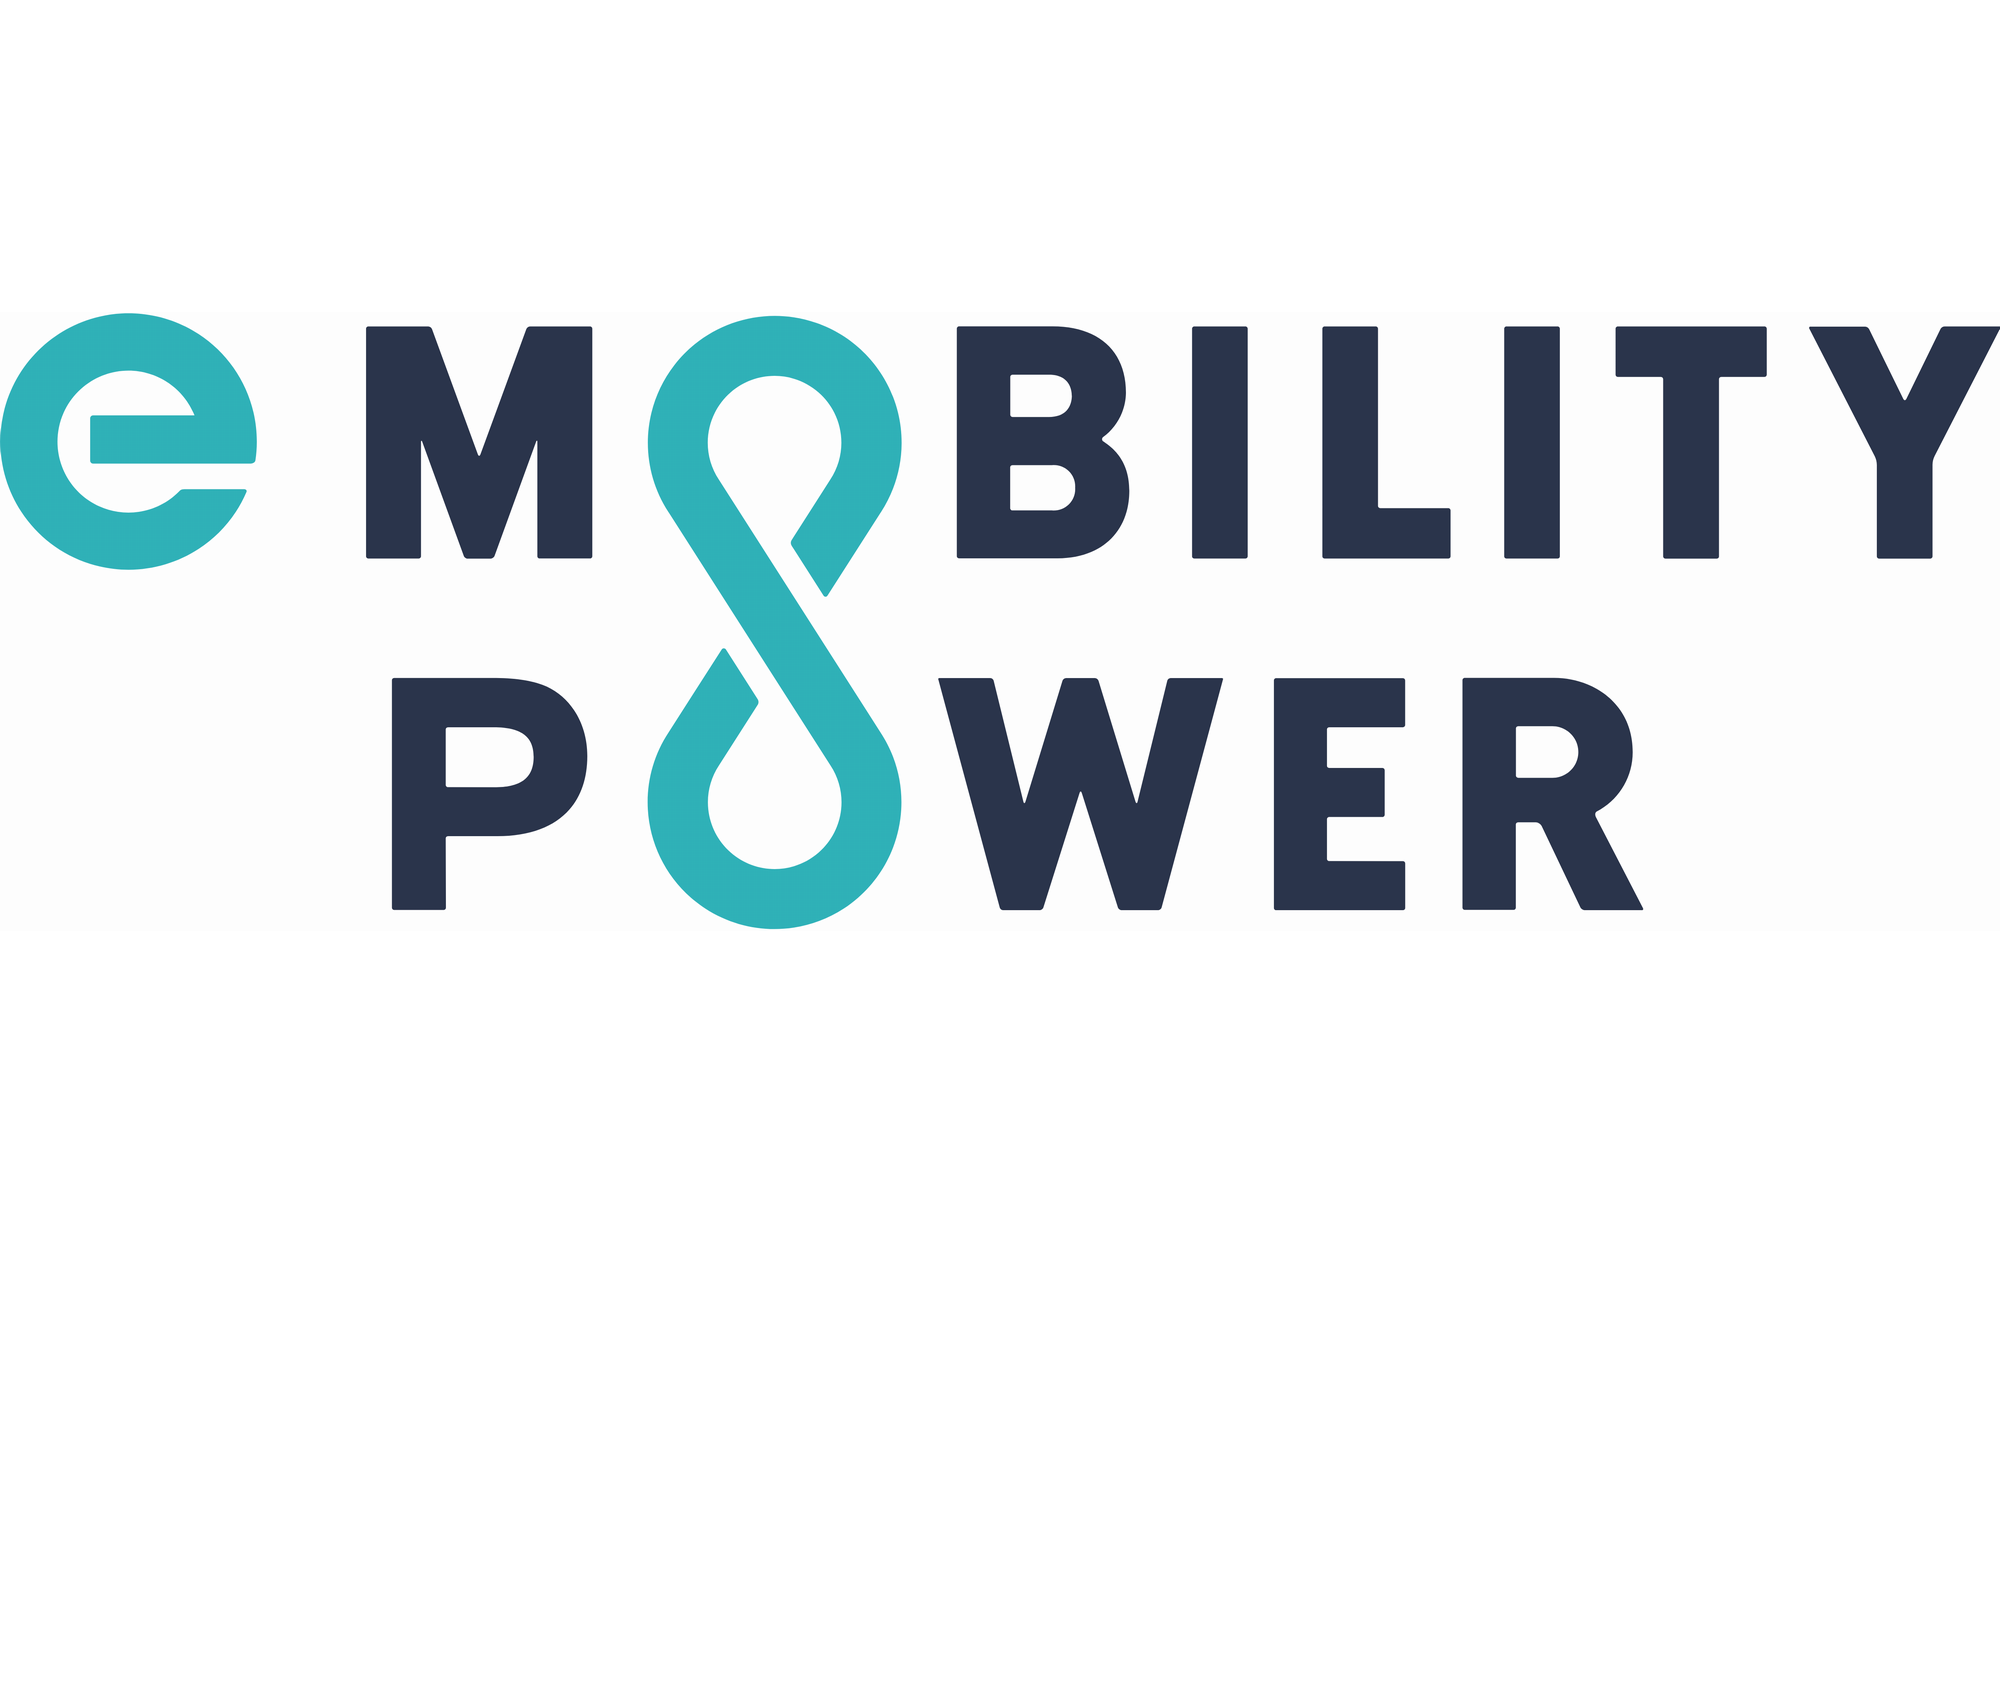 e-Mobility power